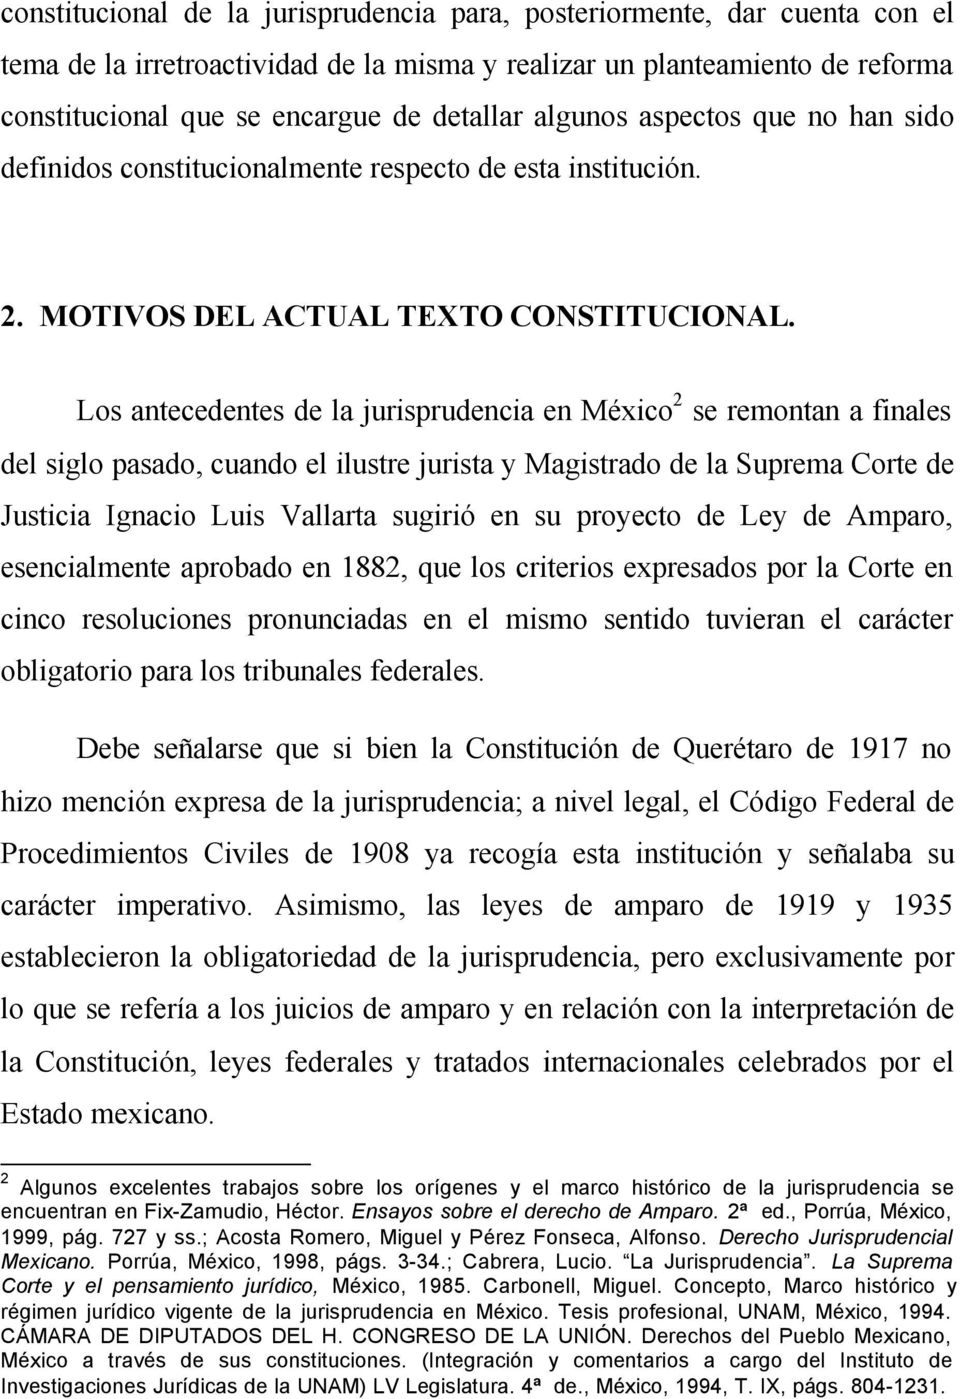 Los antecedentes de la jurisprudencia en México 2 se remontan a finales del siglo pasado, cuando el ilustre jurista y Magistrado de la Suprema Corte de Justicia Ignacio Luis Vallarta sugirió en su